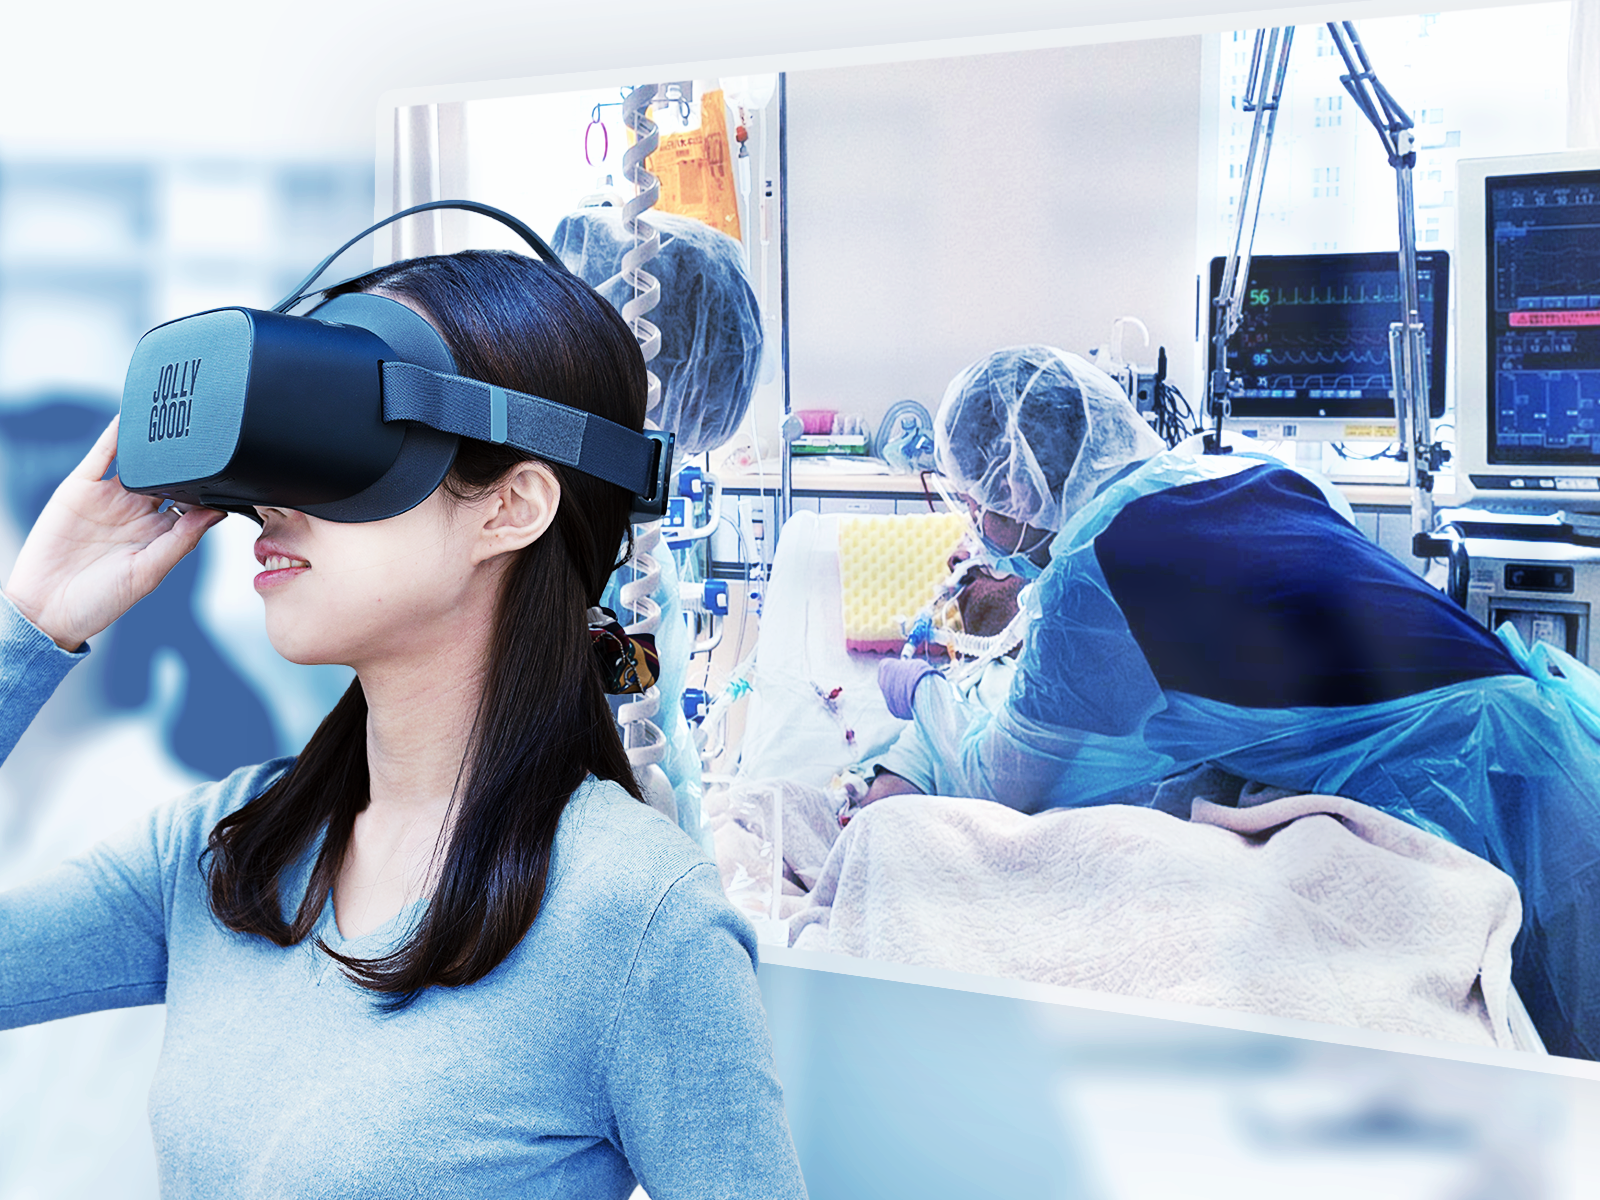 ジョリーグッドと順天堂大学、感染症診療VRを共同開発。実際の「COVID-19診療病棟」を舞台に高精度VR実習を医学生らに提供